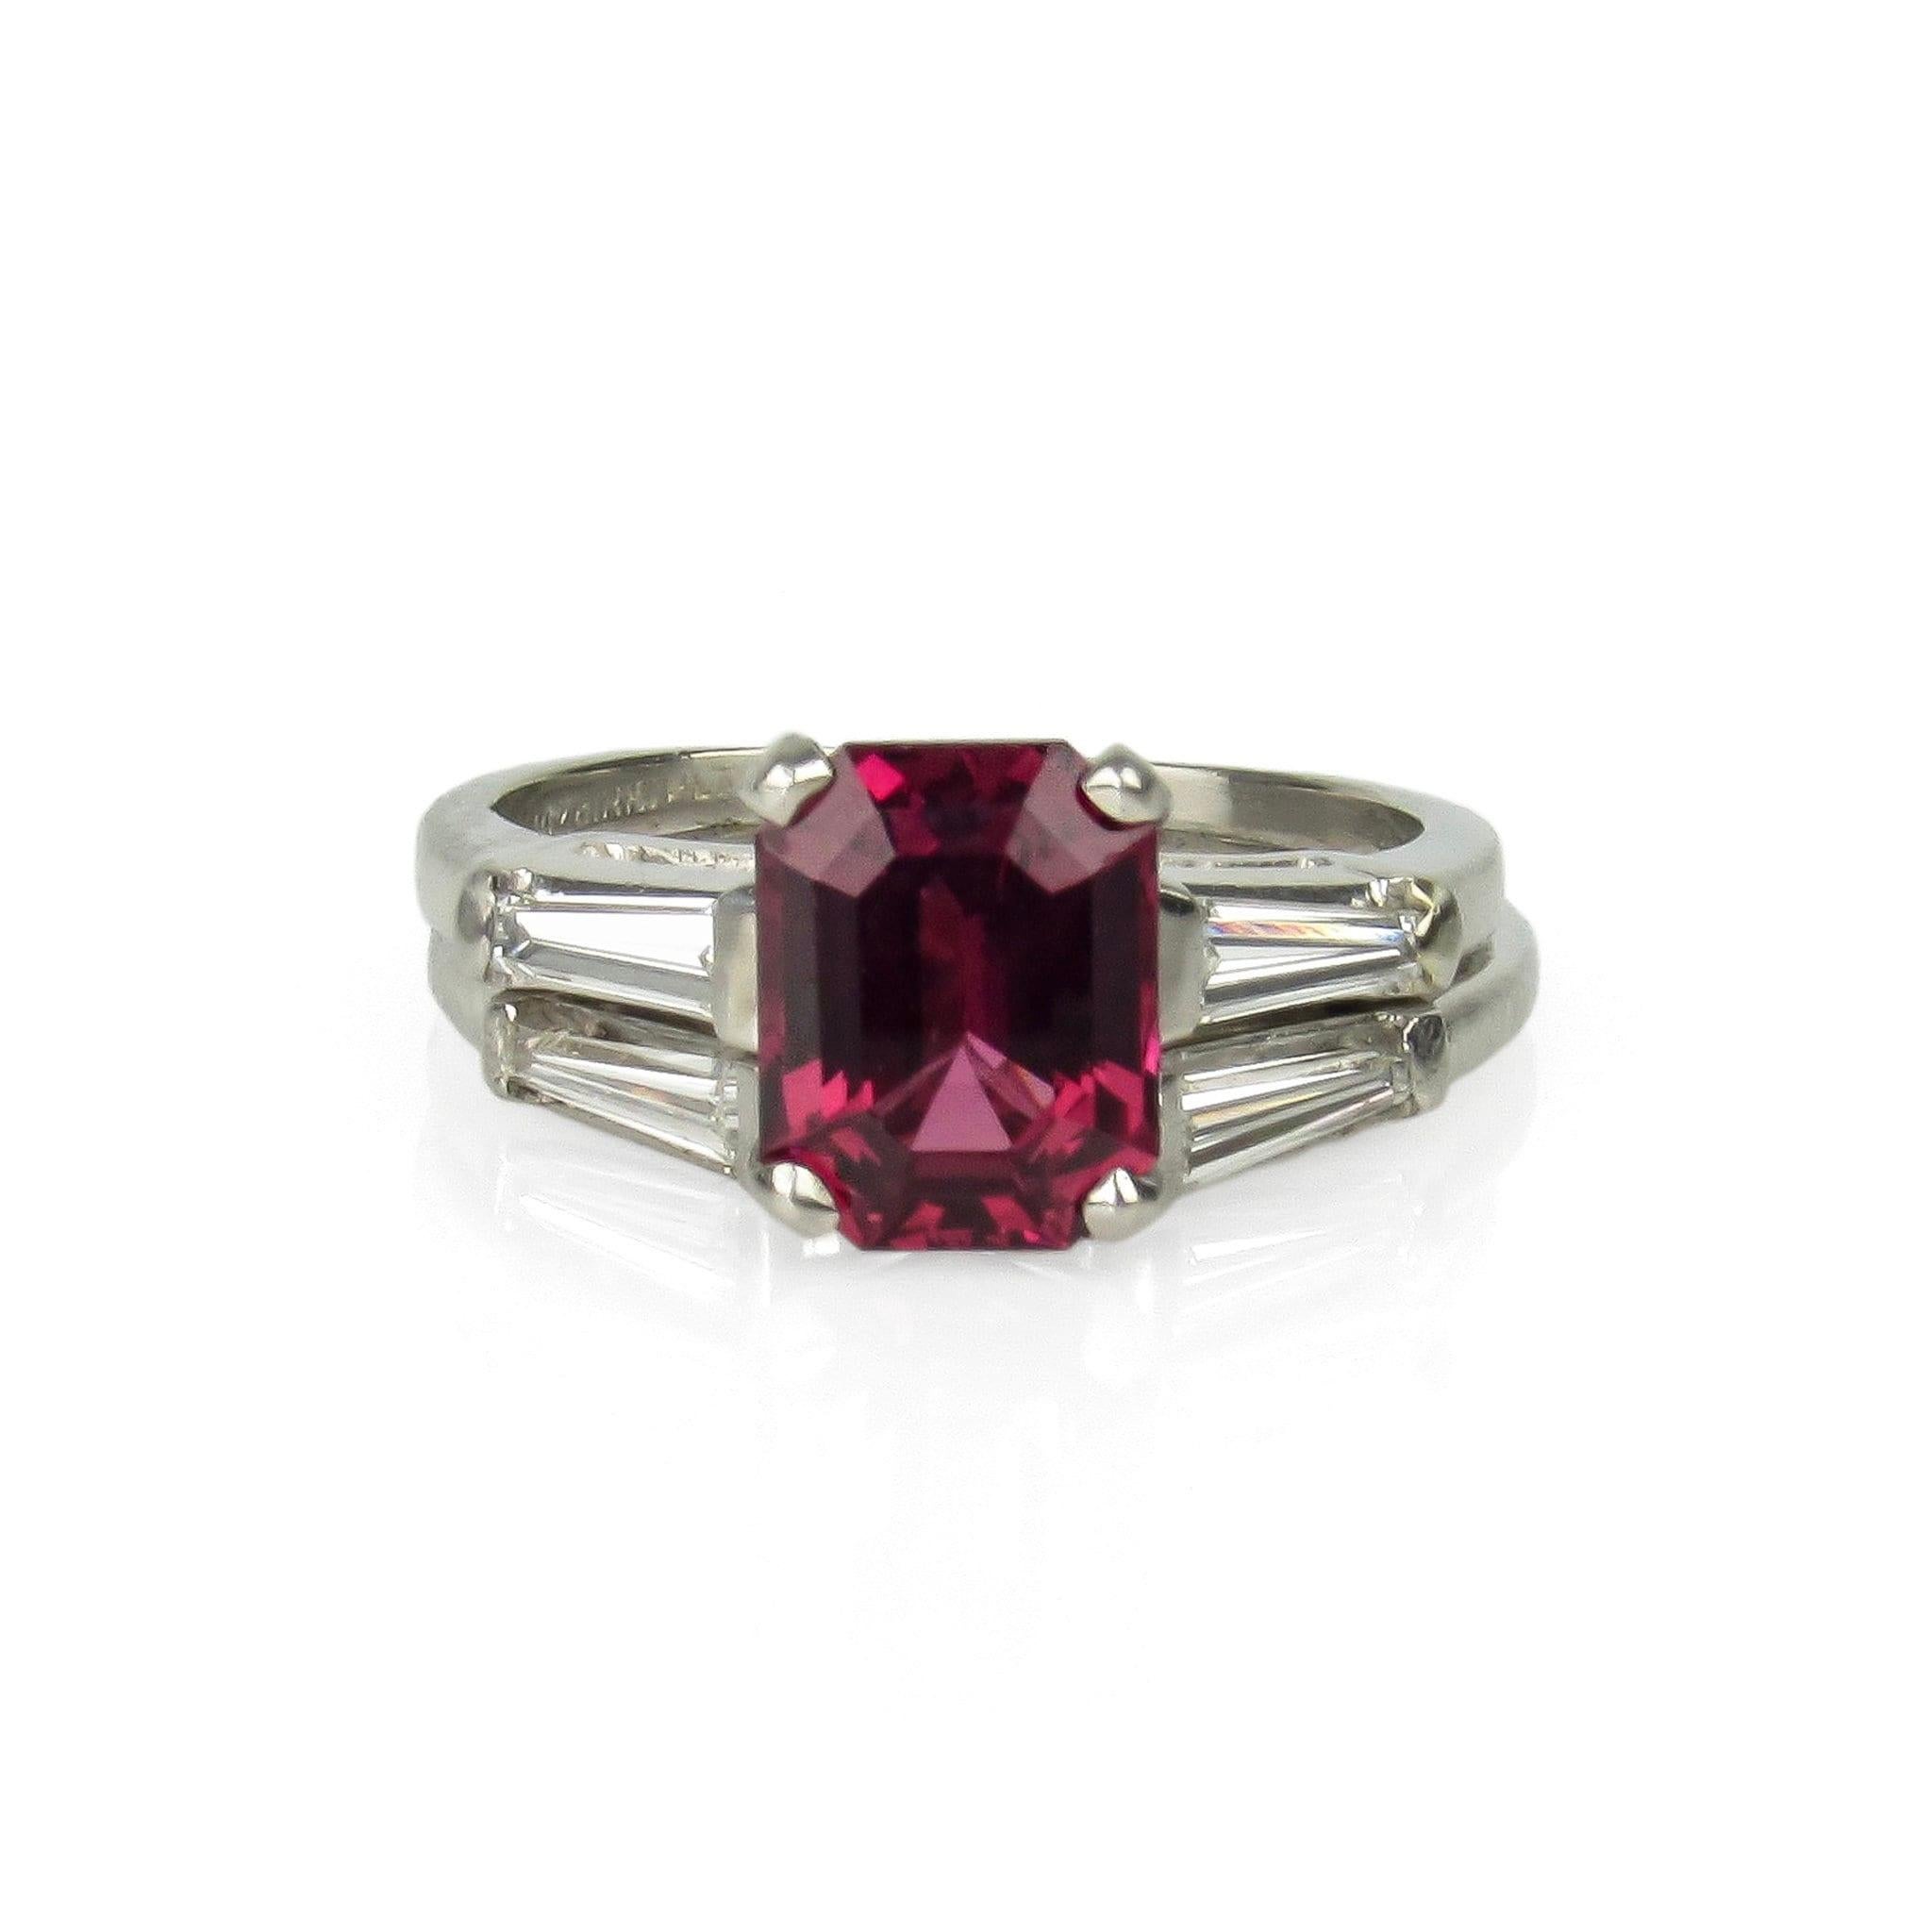 Platin Brillant Rosa/Rot Rubellit Turmalin & Diamant Ring Set

Größe: 5,5

Turmalin: ausgezeichnete Farbe und Klarheit, ca. 2,20 ct. (8,69 x 6,79 x 4,81 mm)

Diamanten: vier spitz zulaufende Baguettes, je 0,12 ct, Reinheitsgrad VS1 - VS2, Farbe